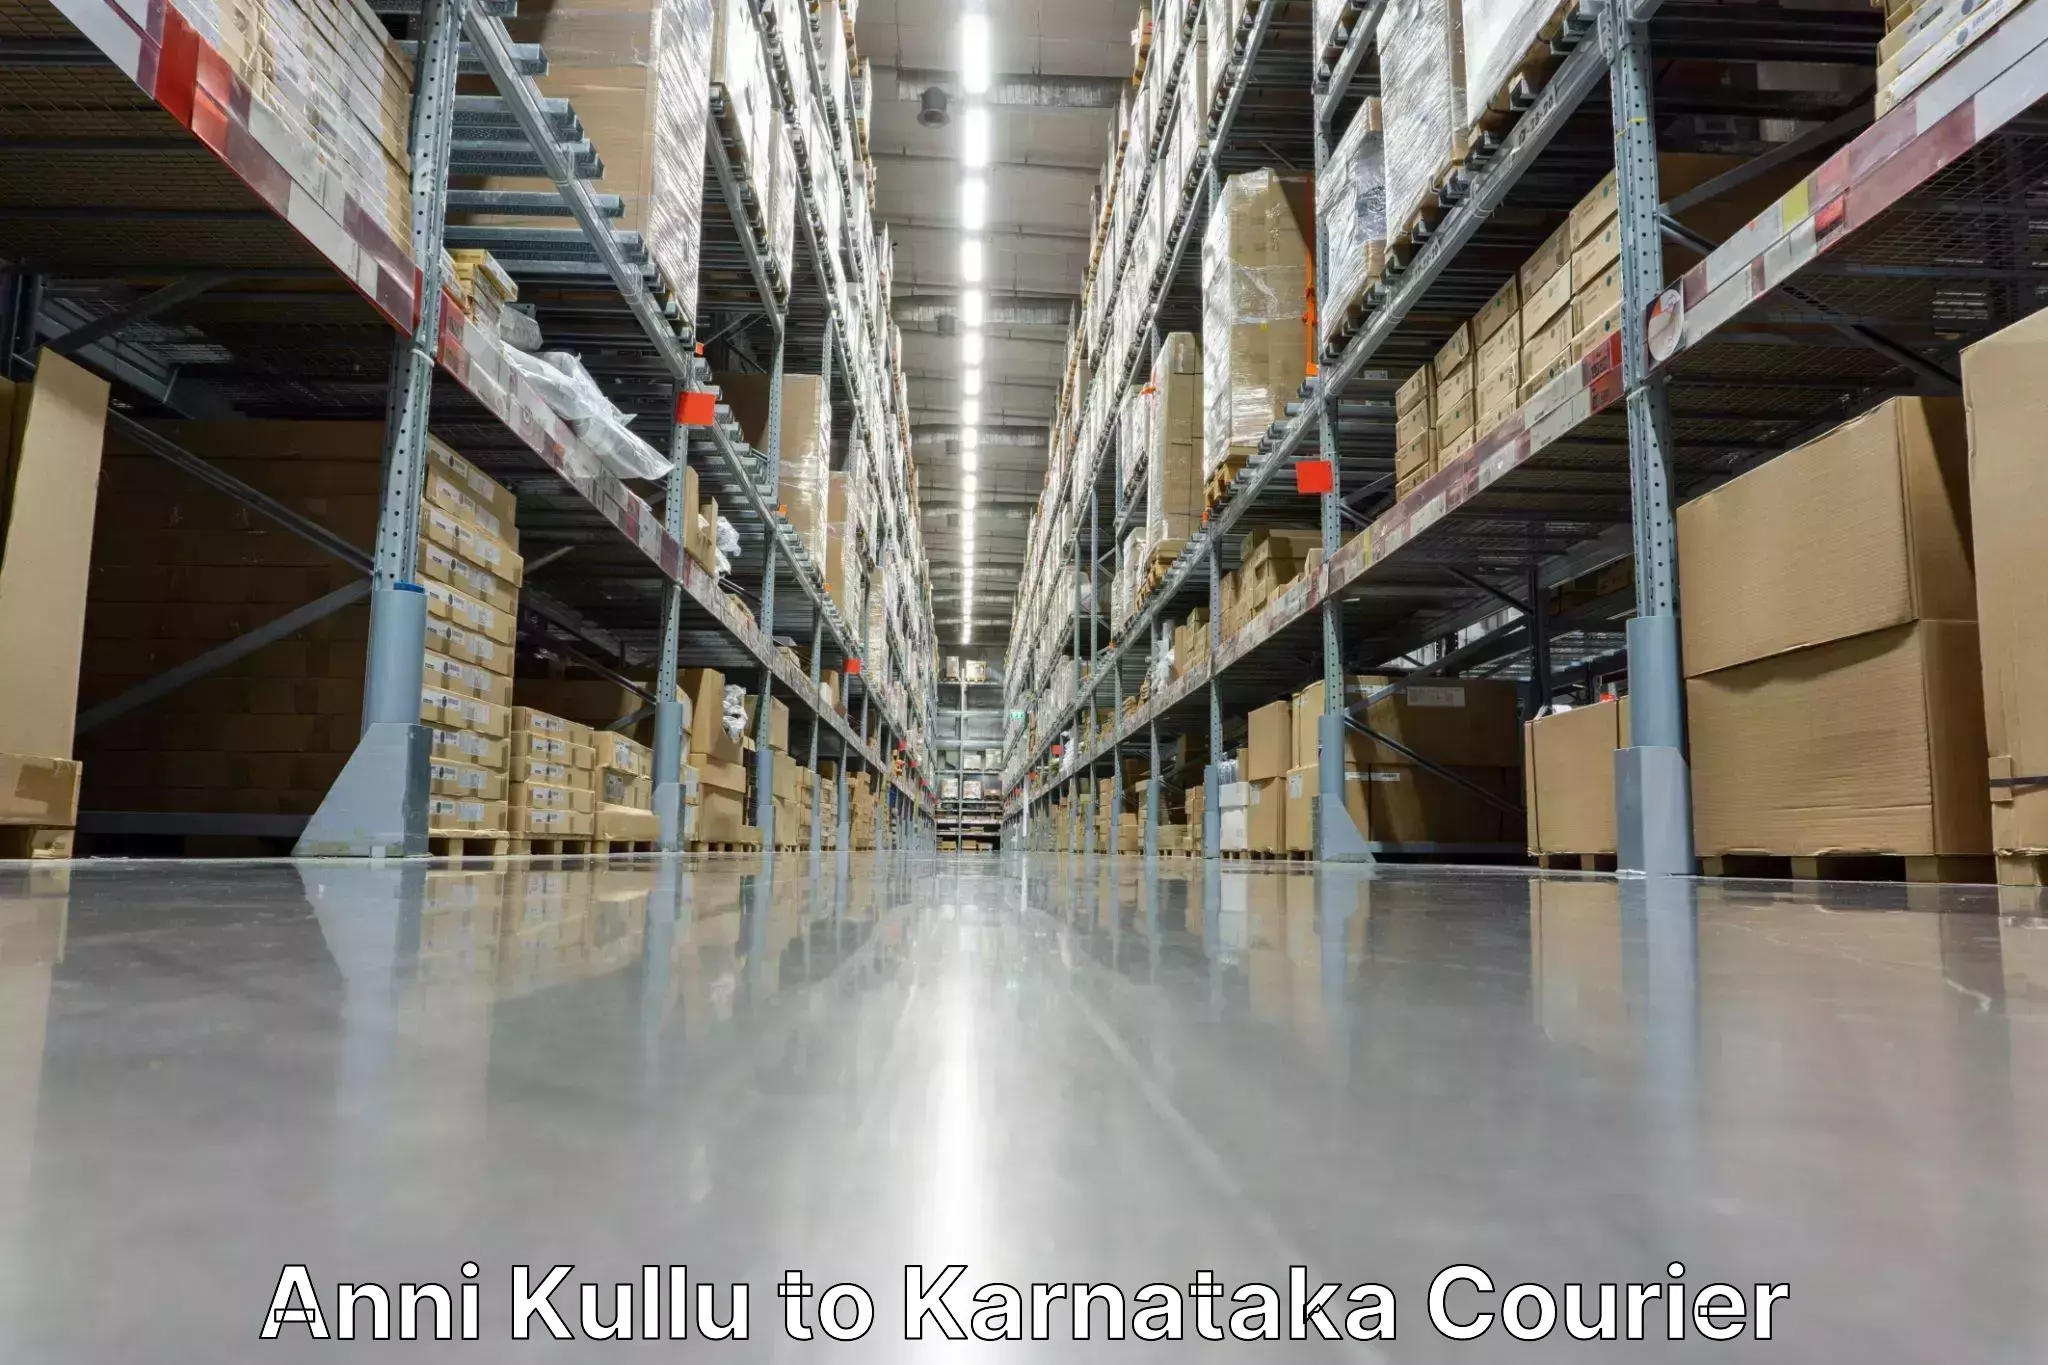 Individual parcel service Anni Kullu to Karnataka